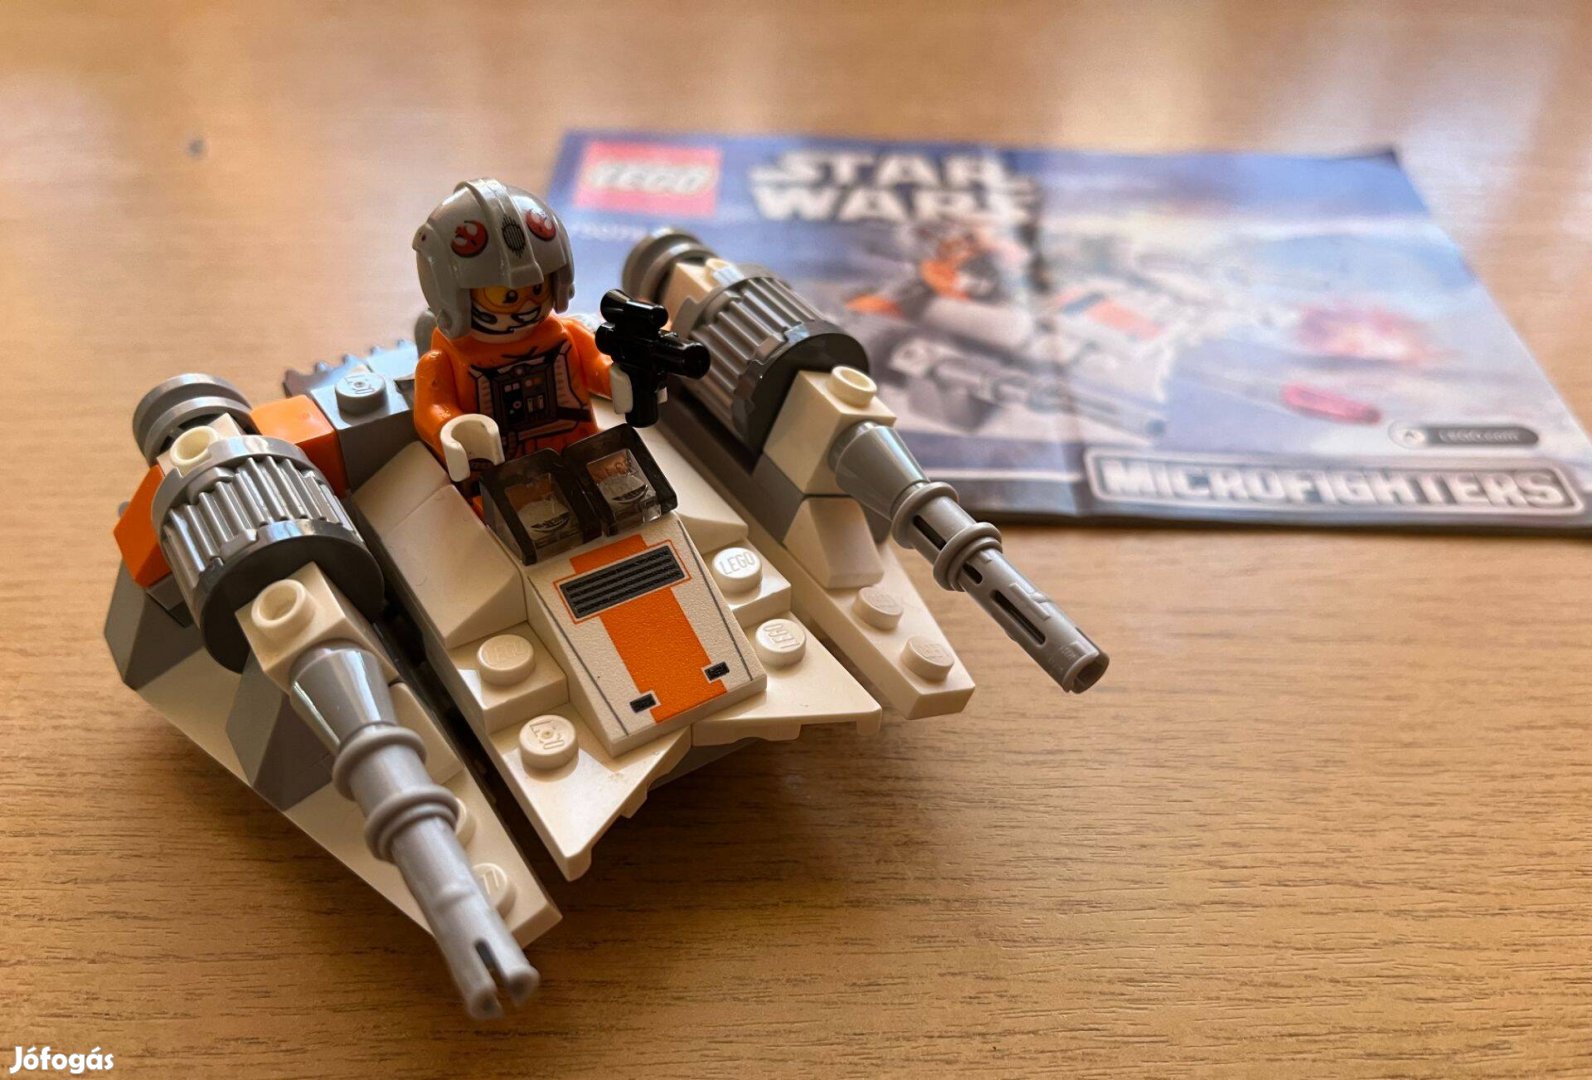 LEGO Star Wars Snowspeeder (75074)